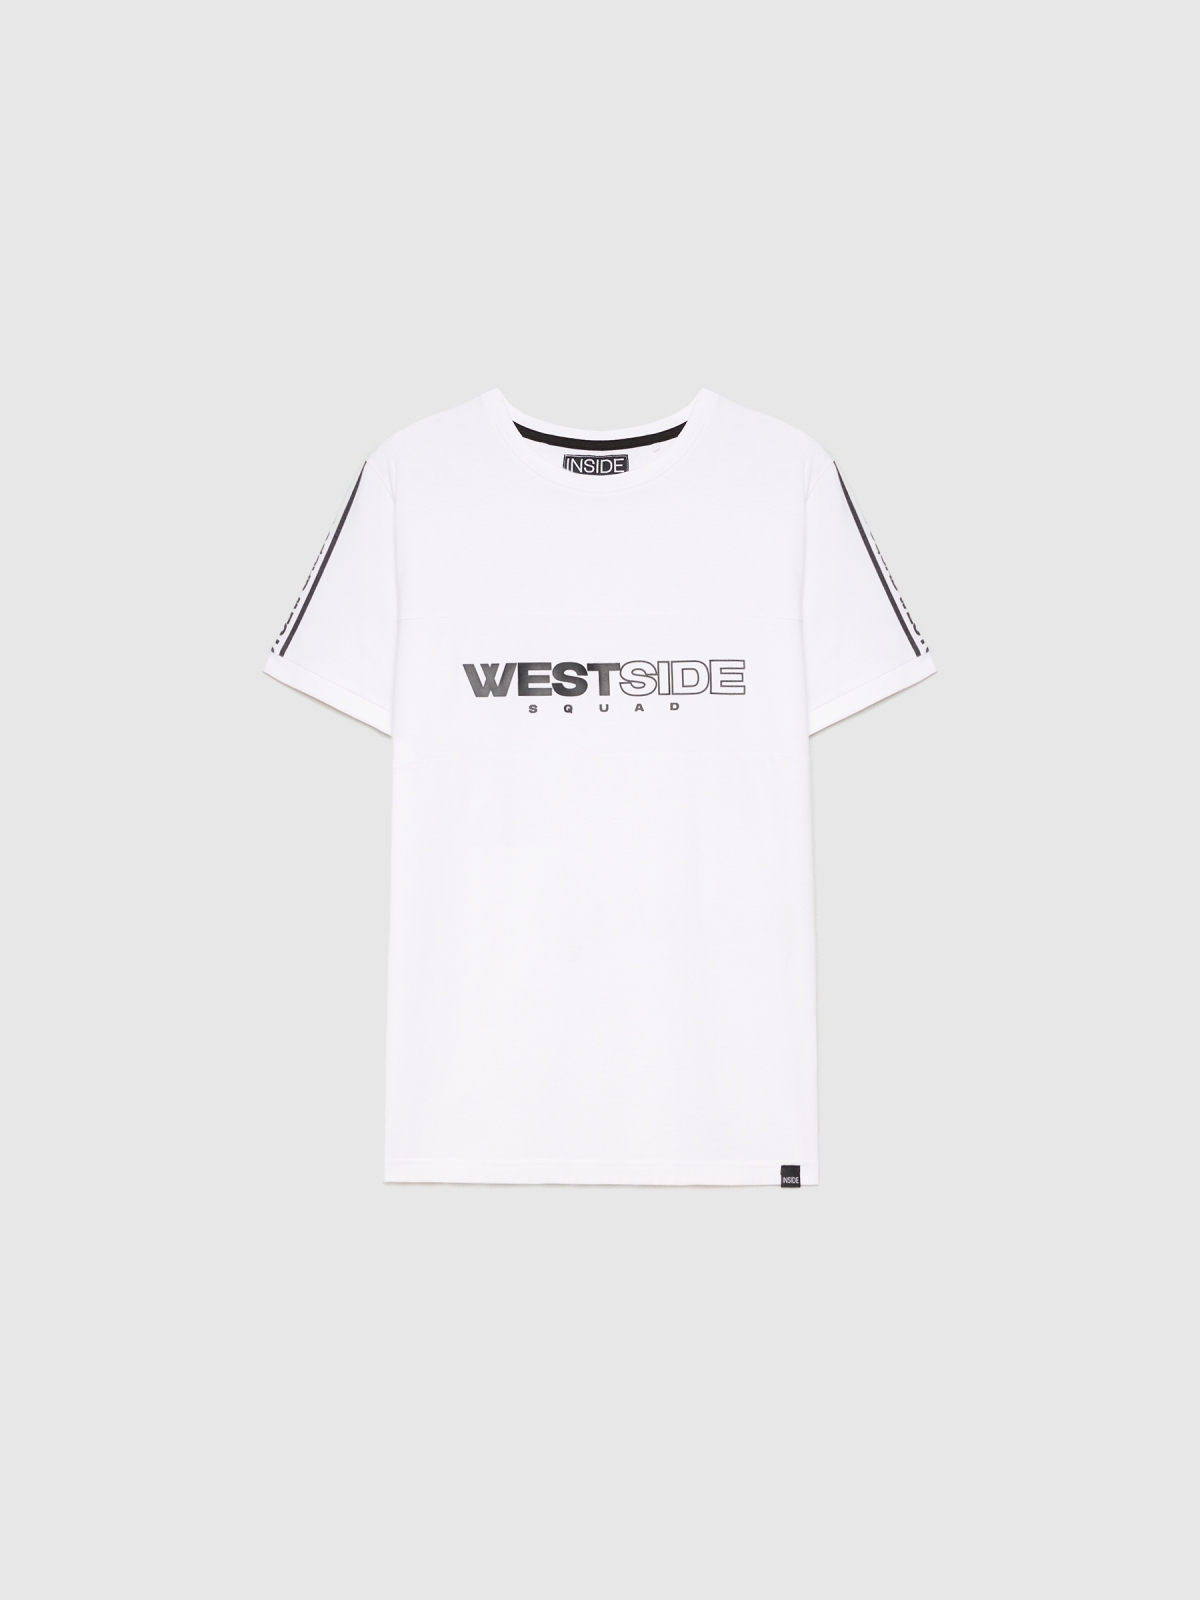  Camiseta Westside blanco